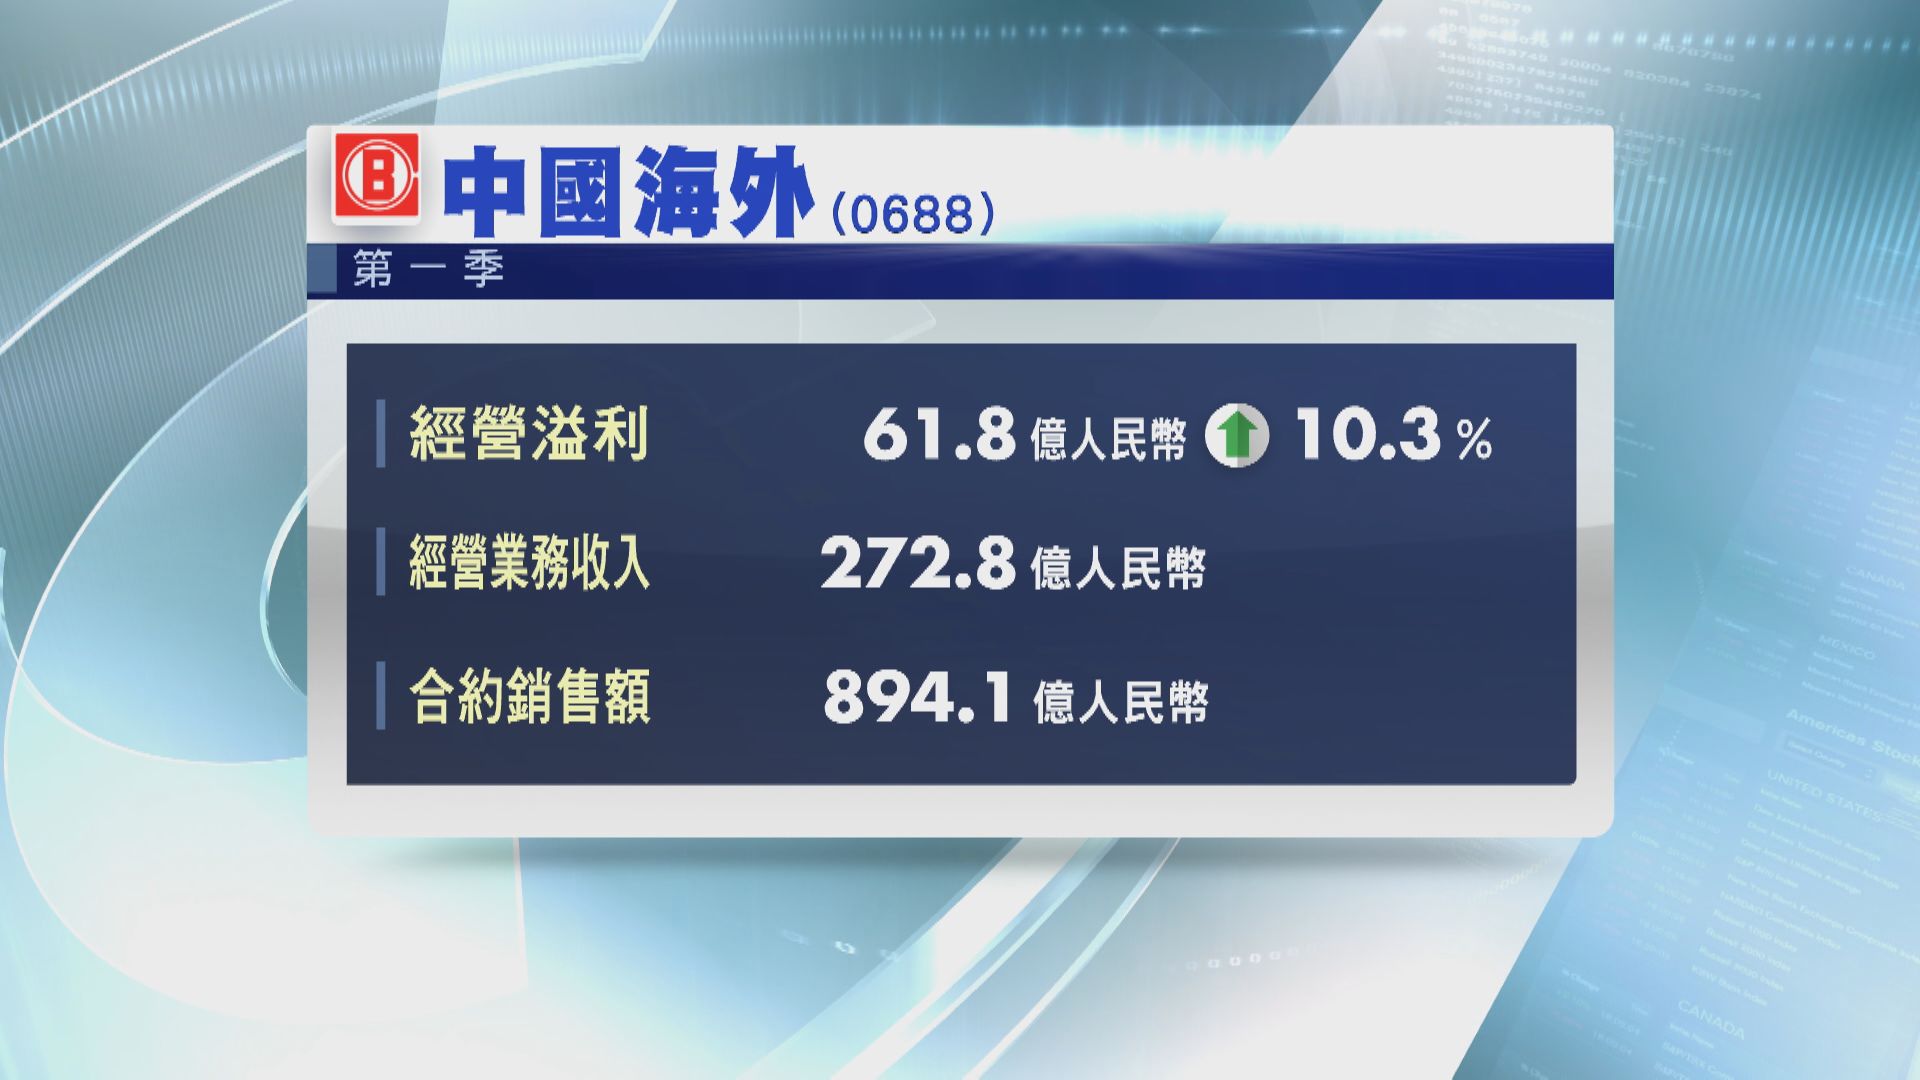 中海外首季經營溢利增逾10%